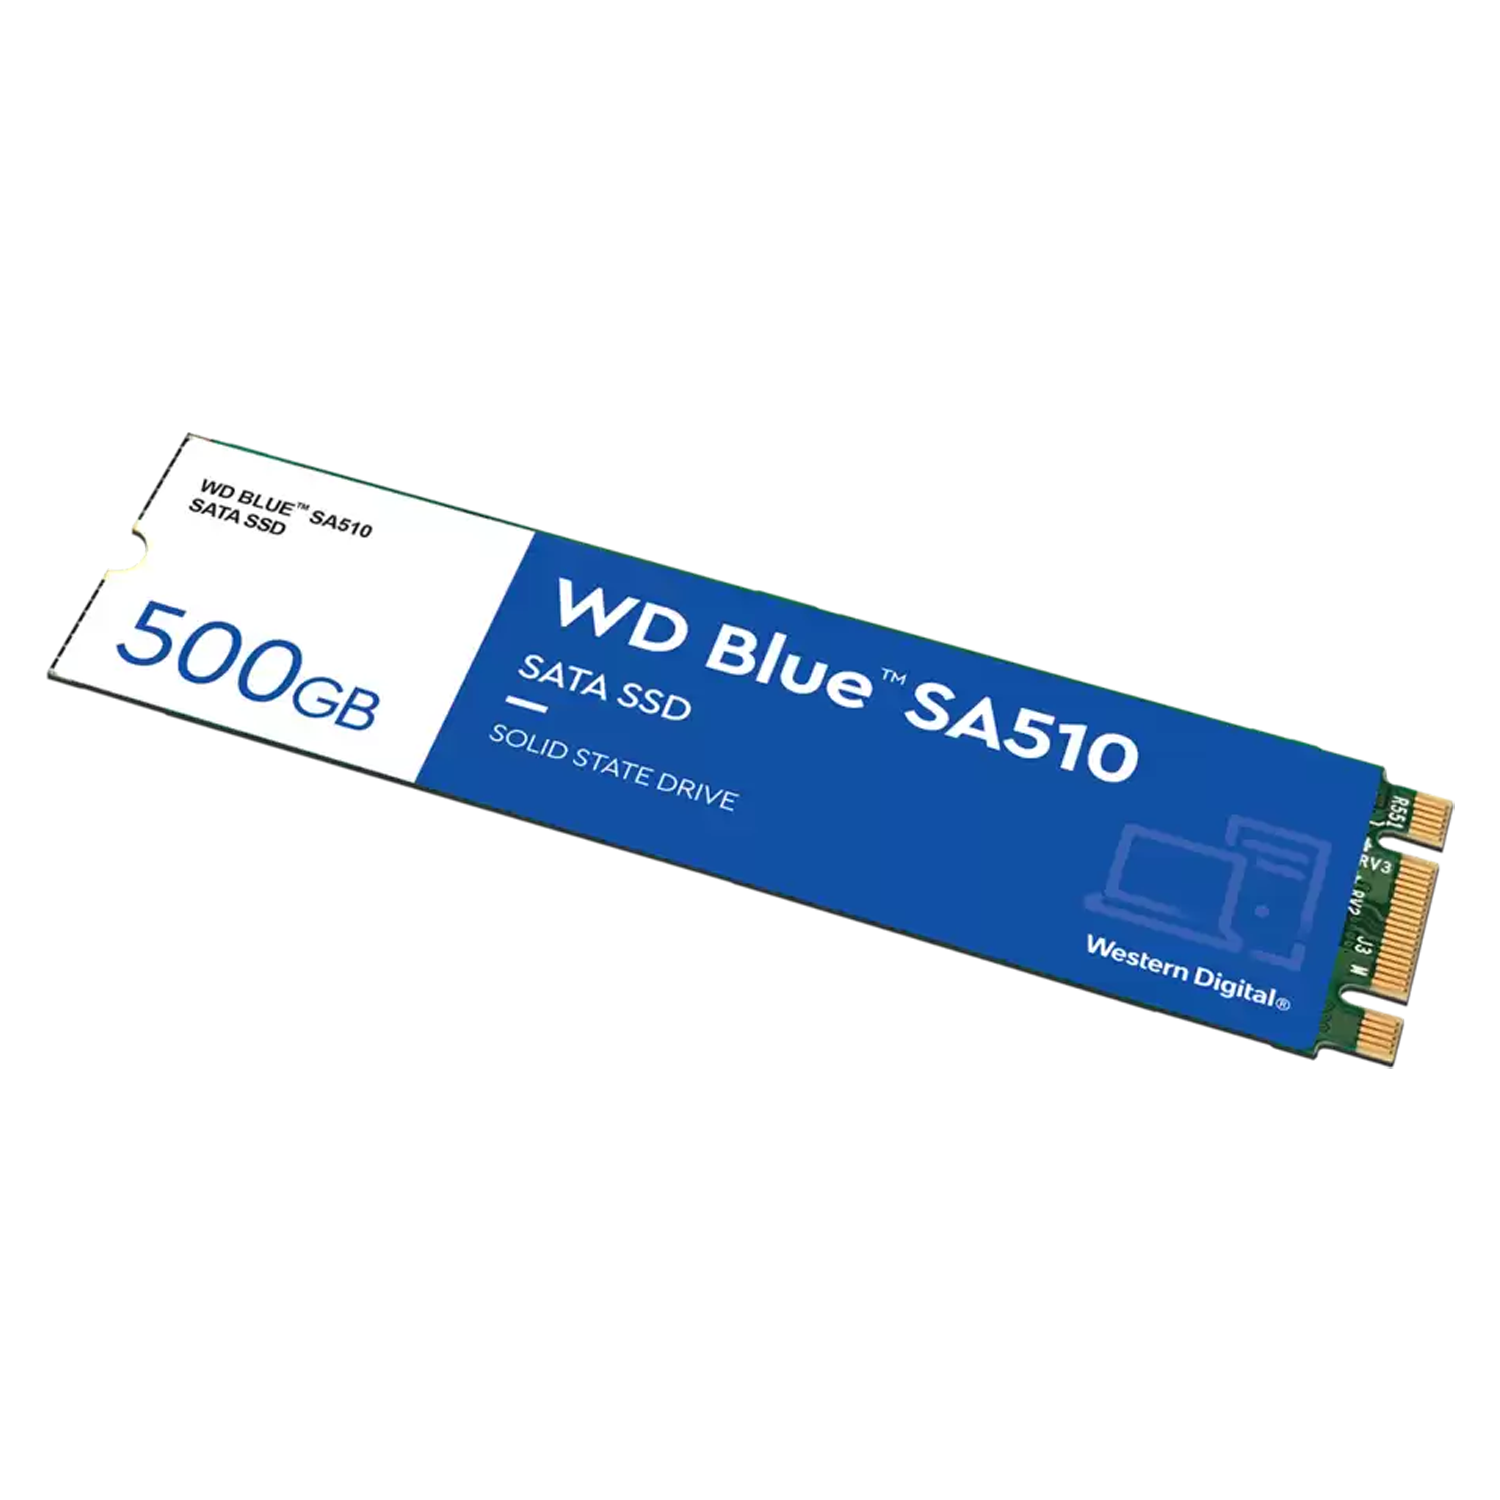 SSD M.2 Western Digital SA510 Blue 500GB SATA 3 - WDS500G3B0B
